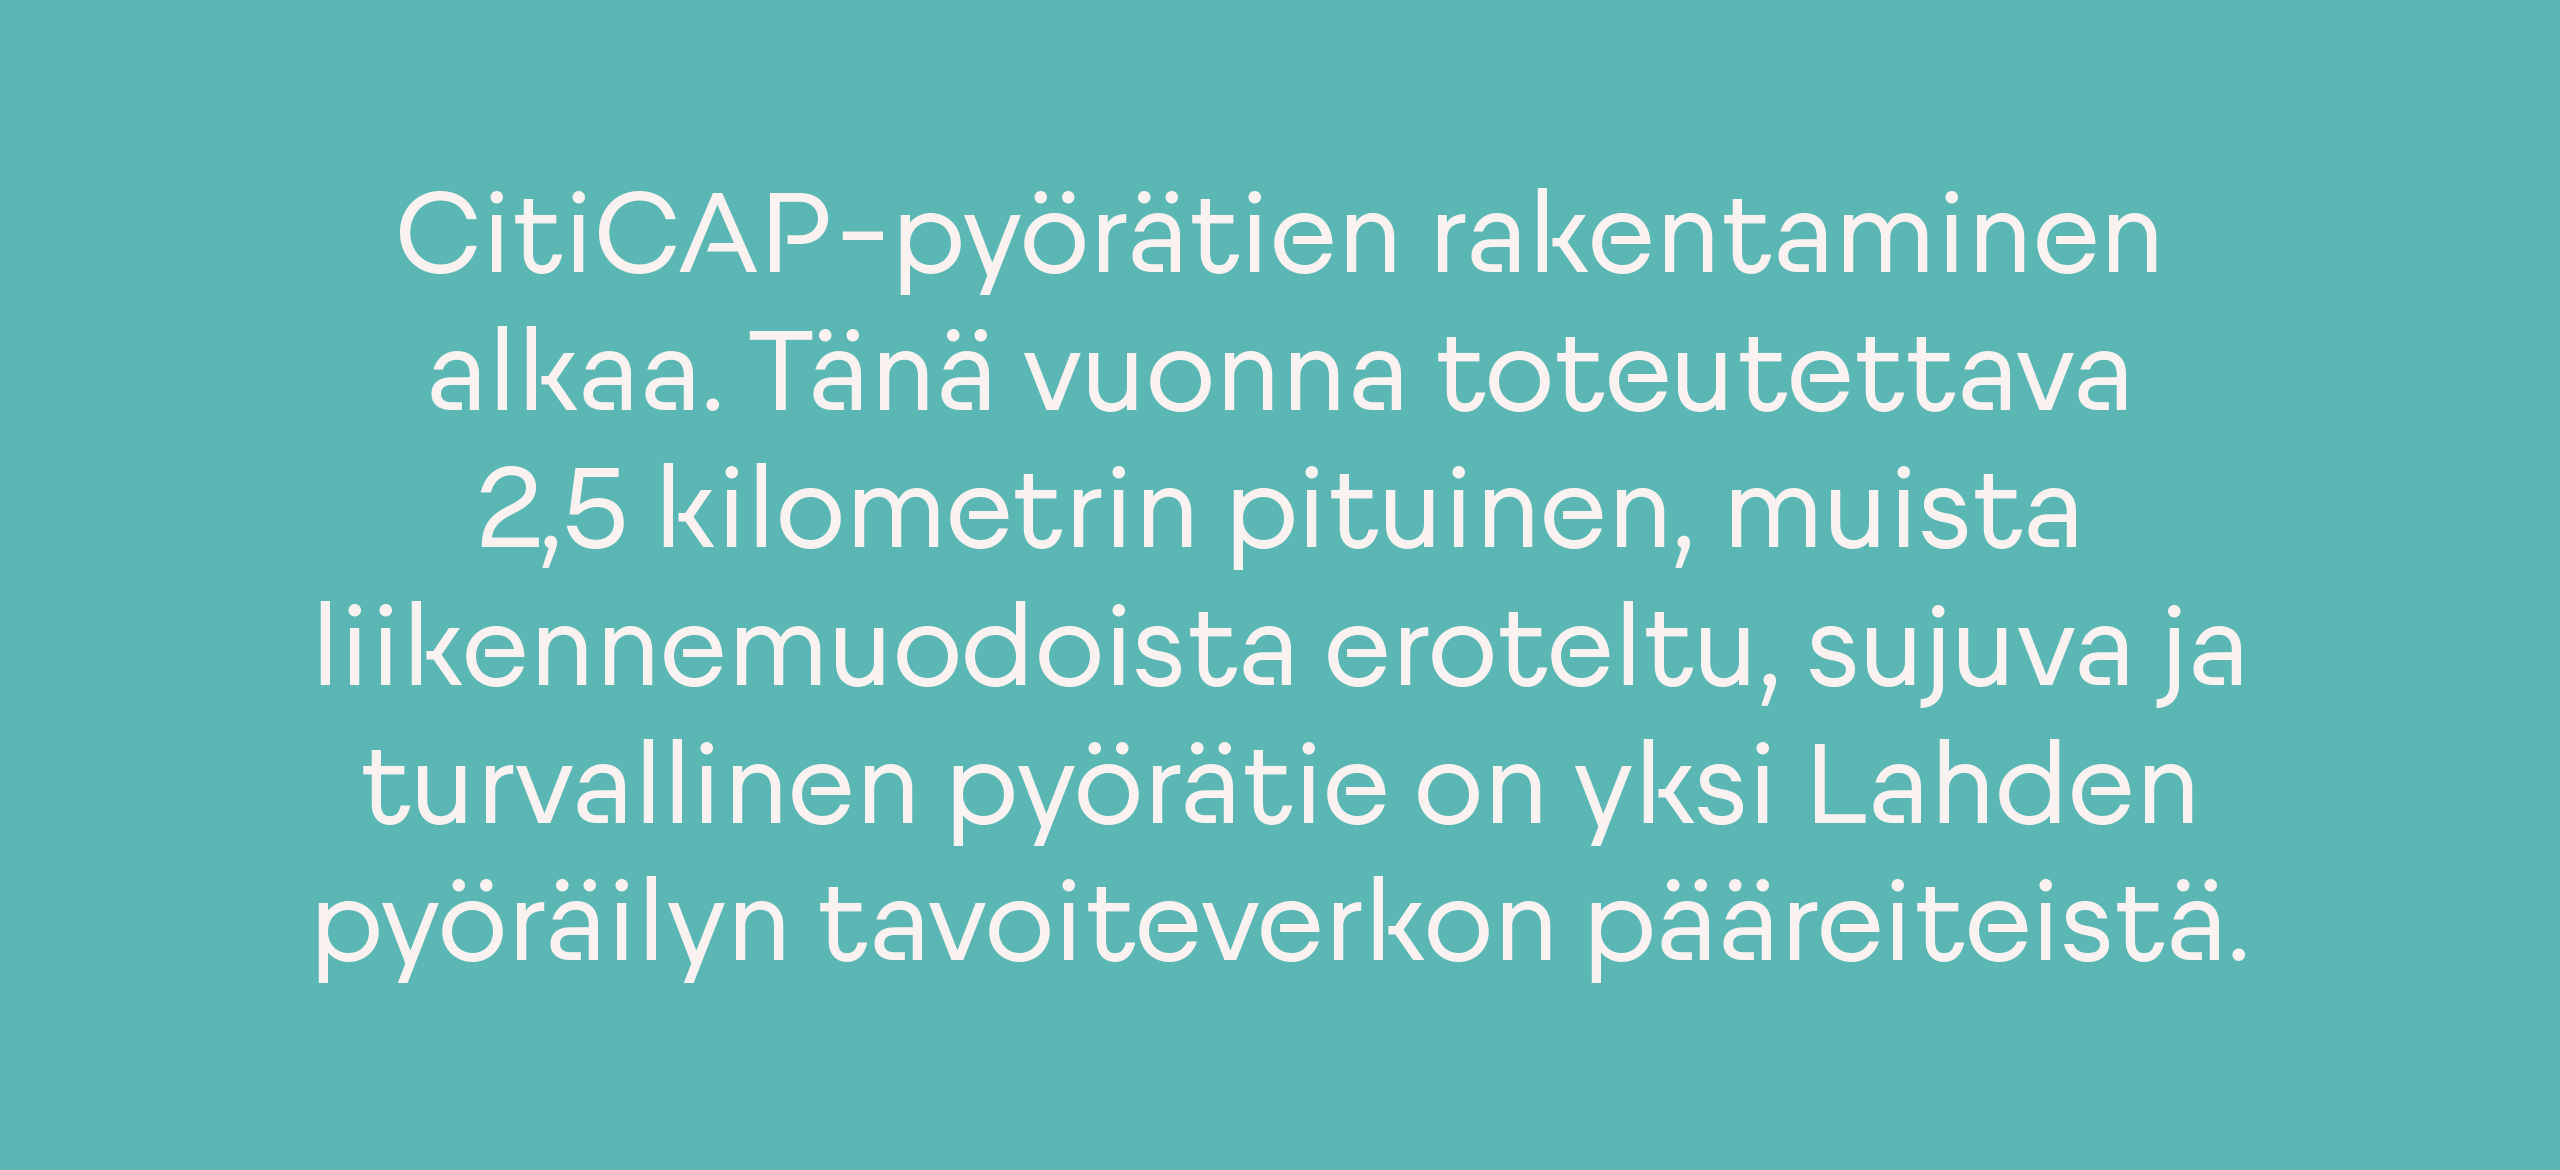 LahtiSans-2-1